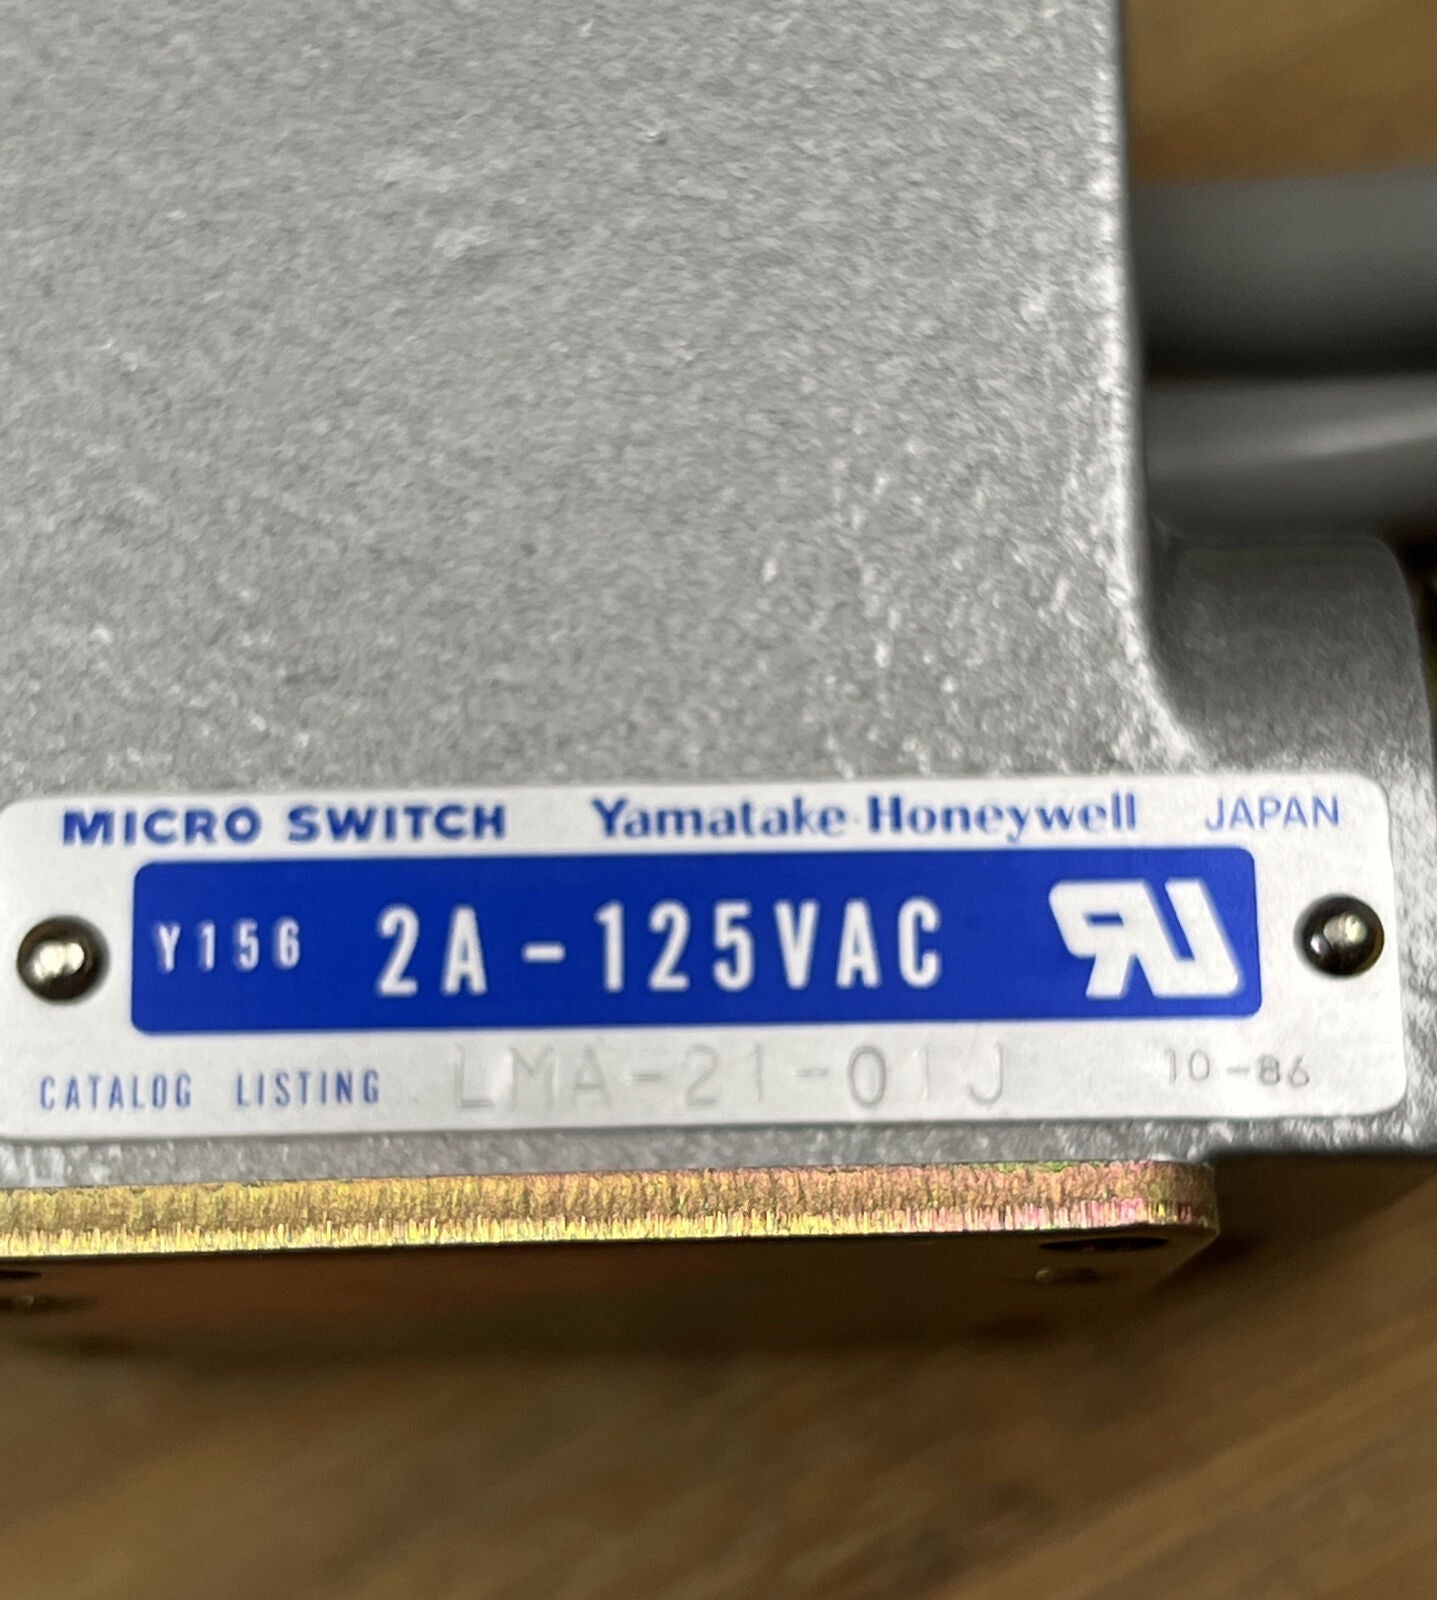 Yamatake Honeywell Microswitch LMA-21-01J Limit Switch Plunger 2A 125VAC (GR187)